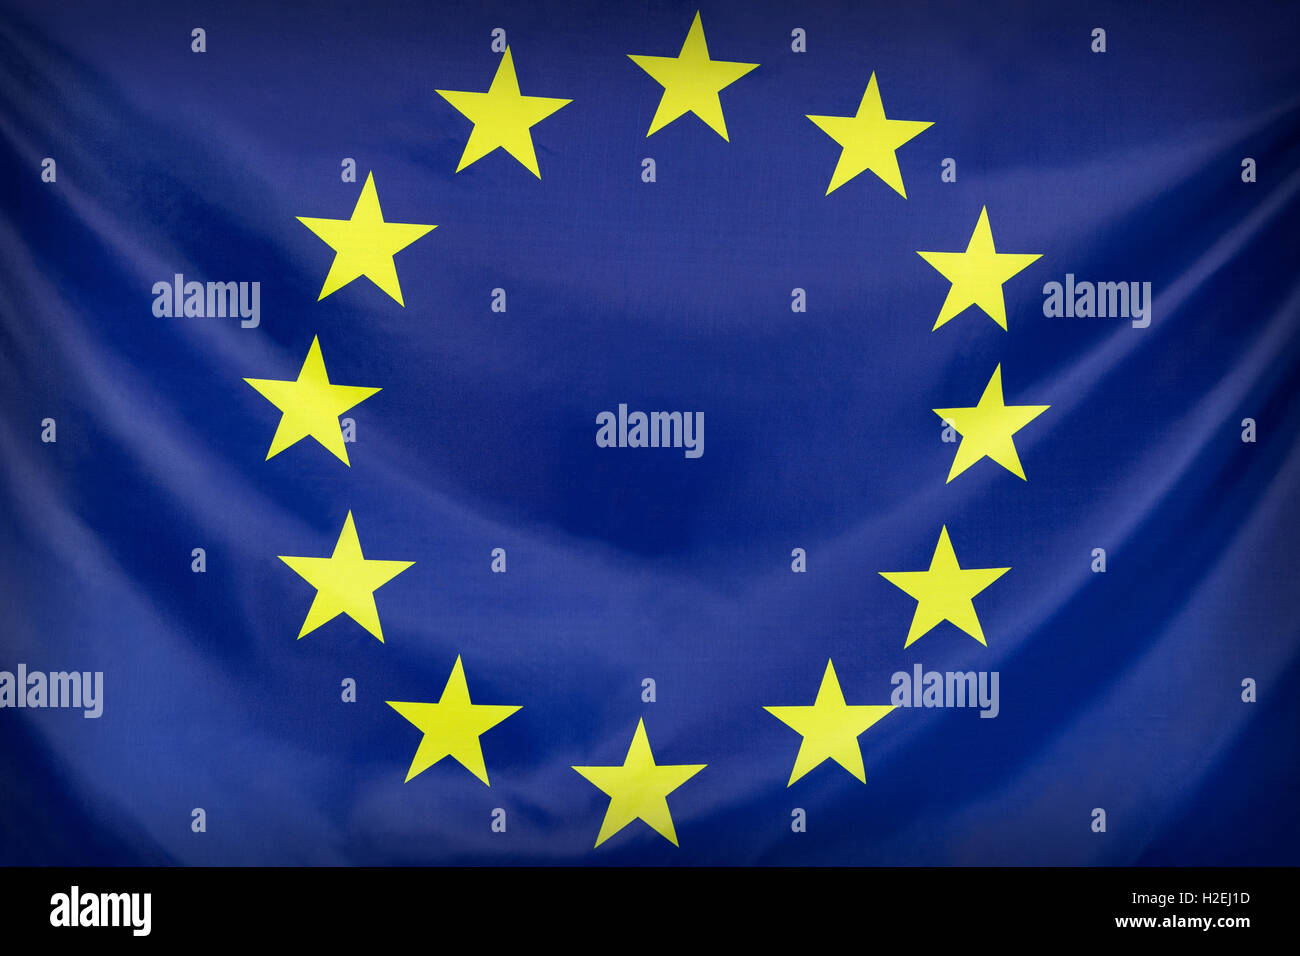 Textile flag of European Union for background Stock Photo